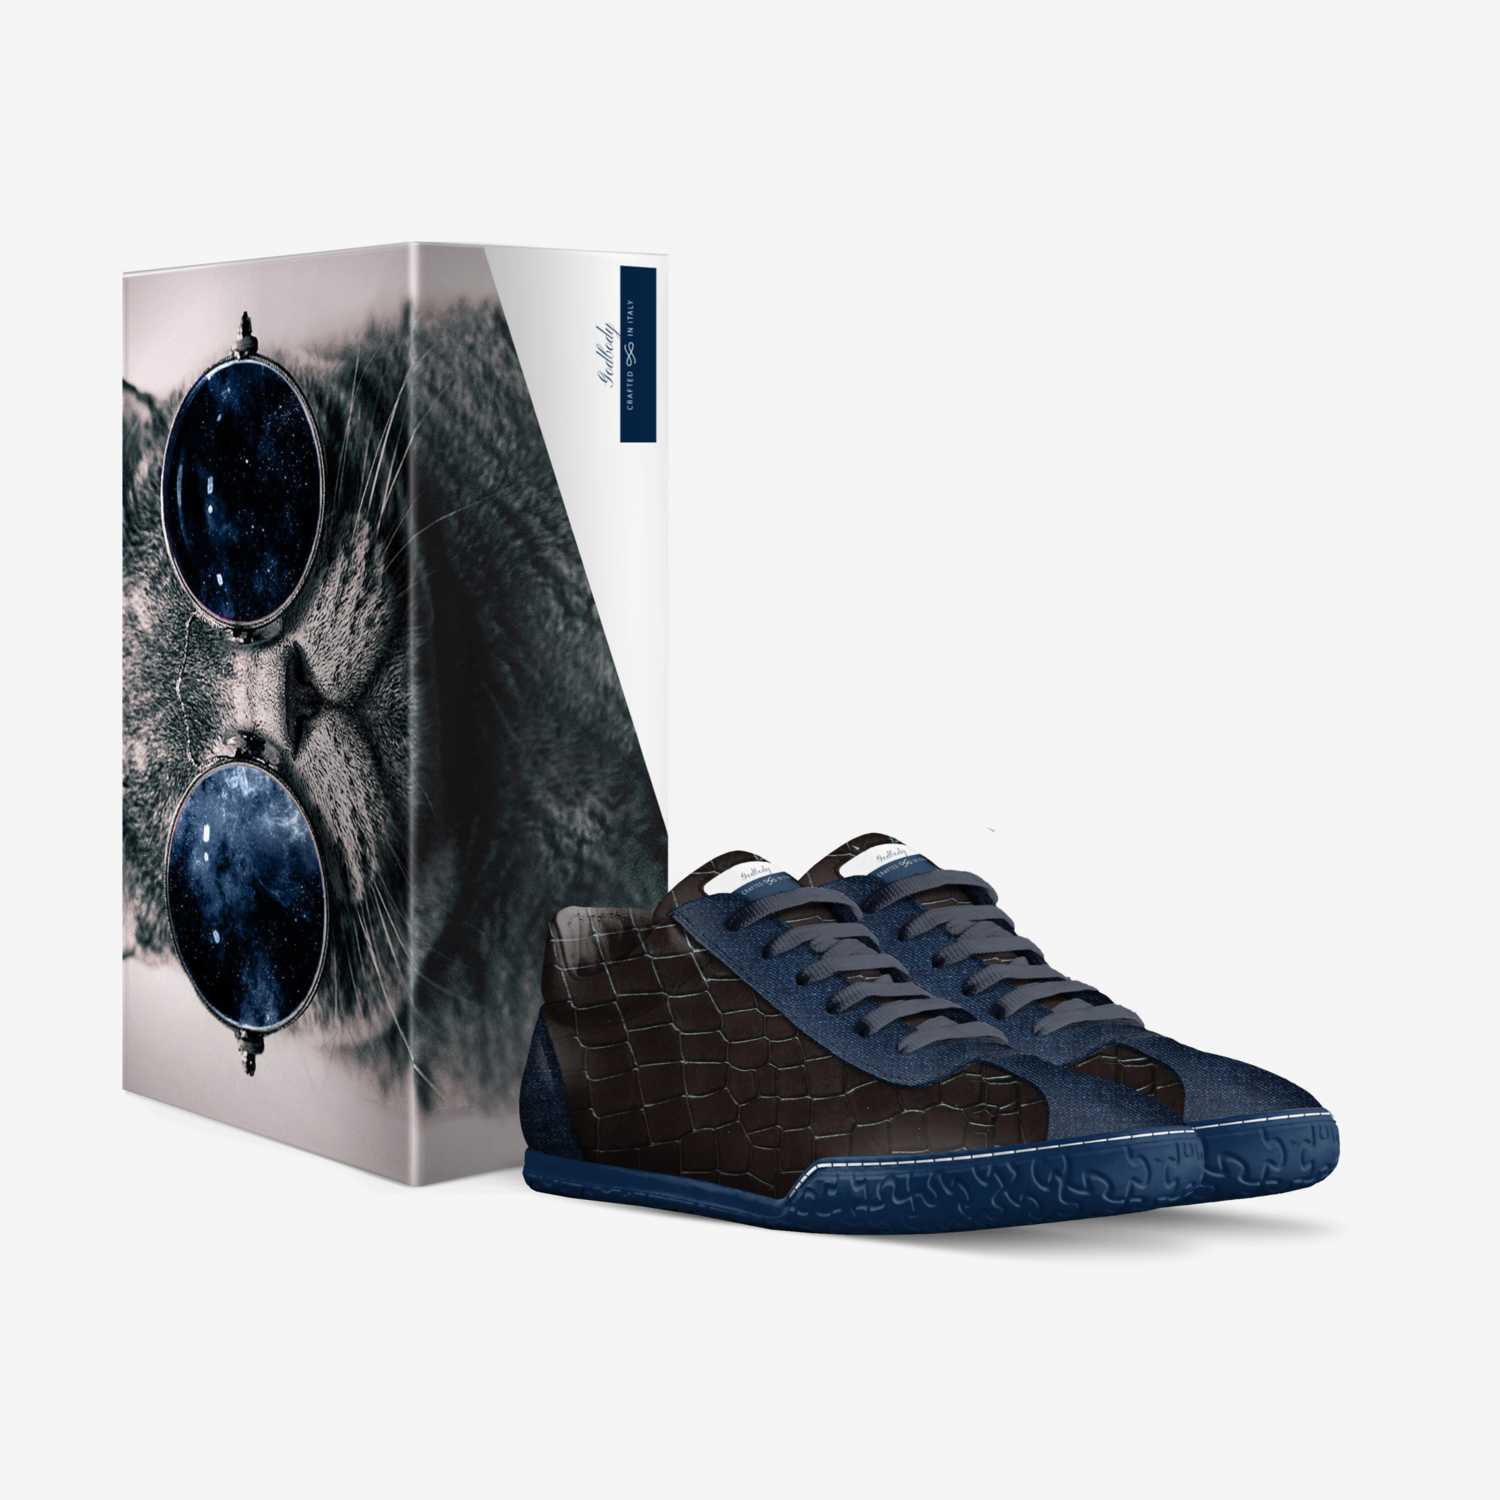 Godbodys  BluePuzz custom made in Italy shoes by Damario Brady | Box view